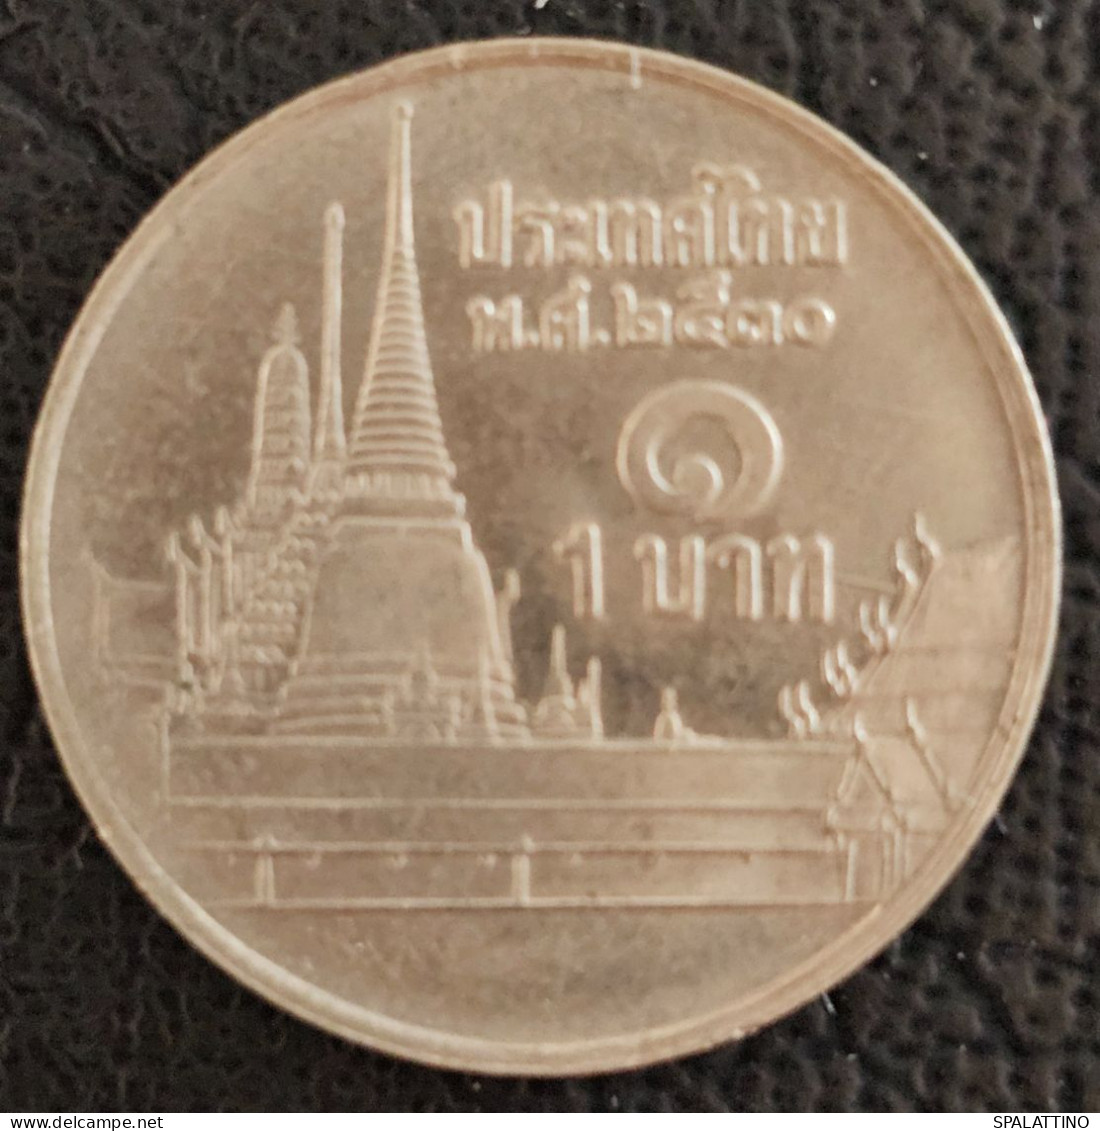 THAILAND- 1 BAHT 1999. - Thaïlande